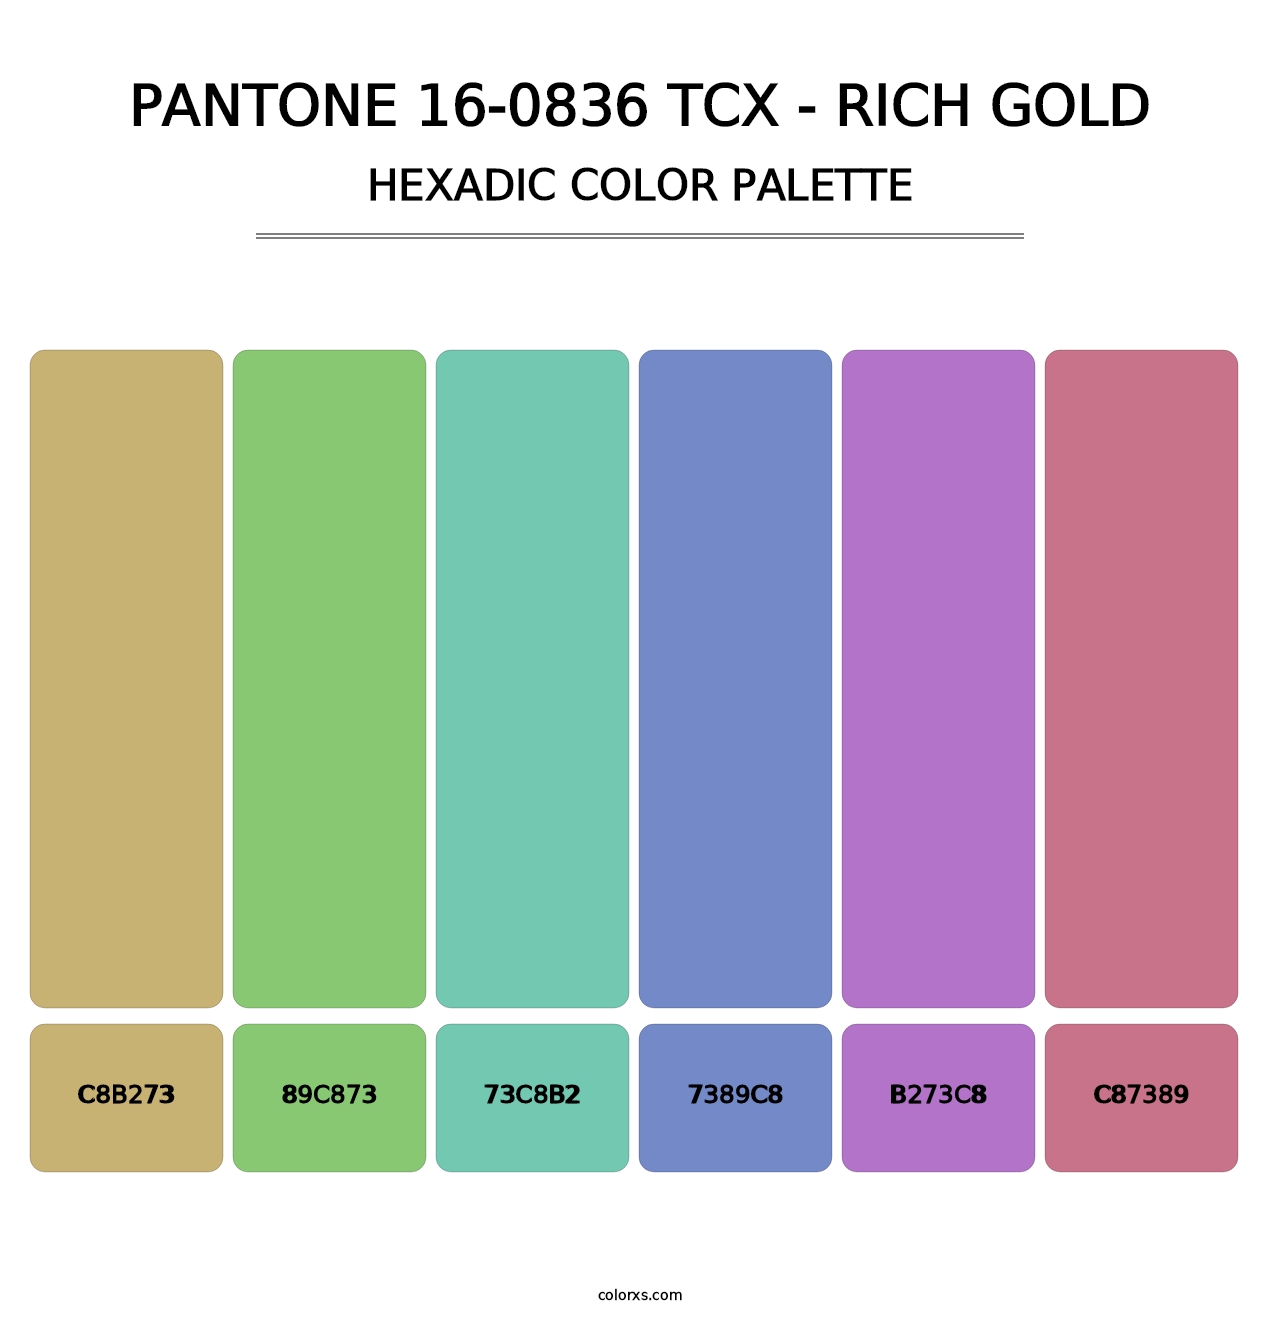 PANTONE 16-0836 TCX - Rich Gold - Hexadic Color Palette